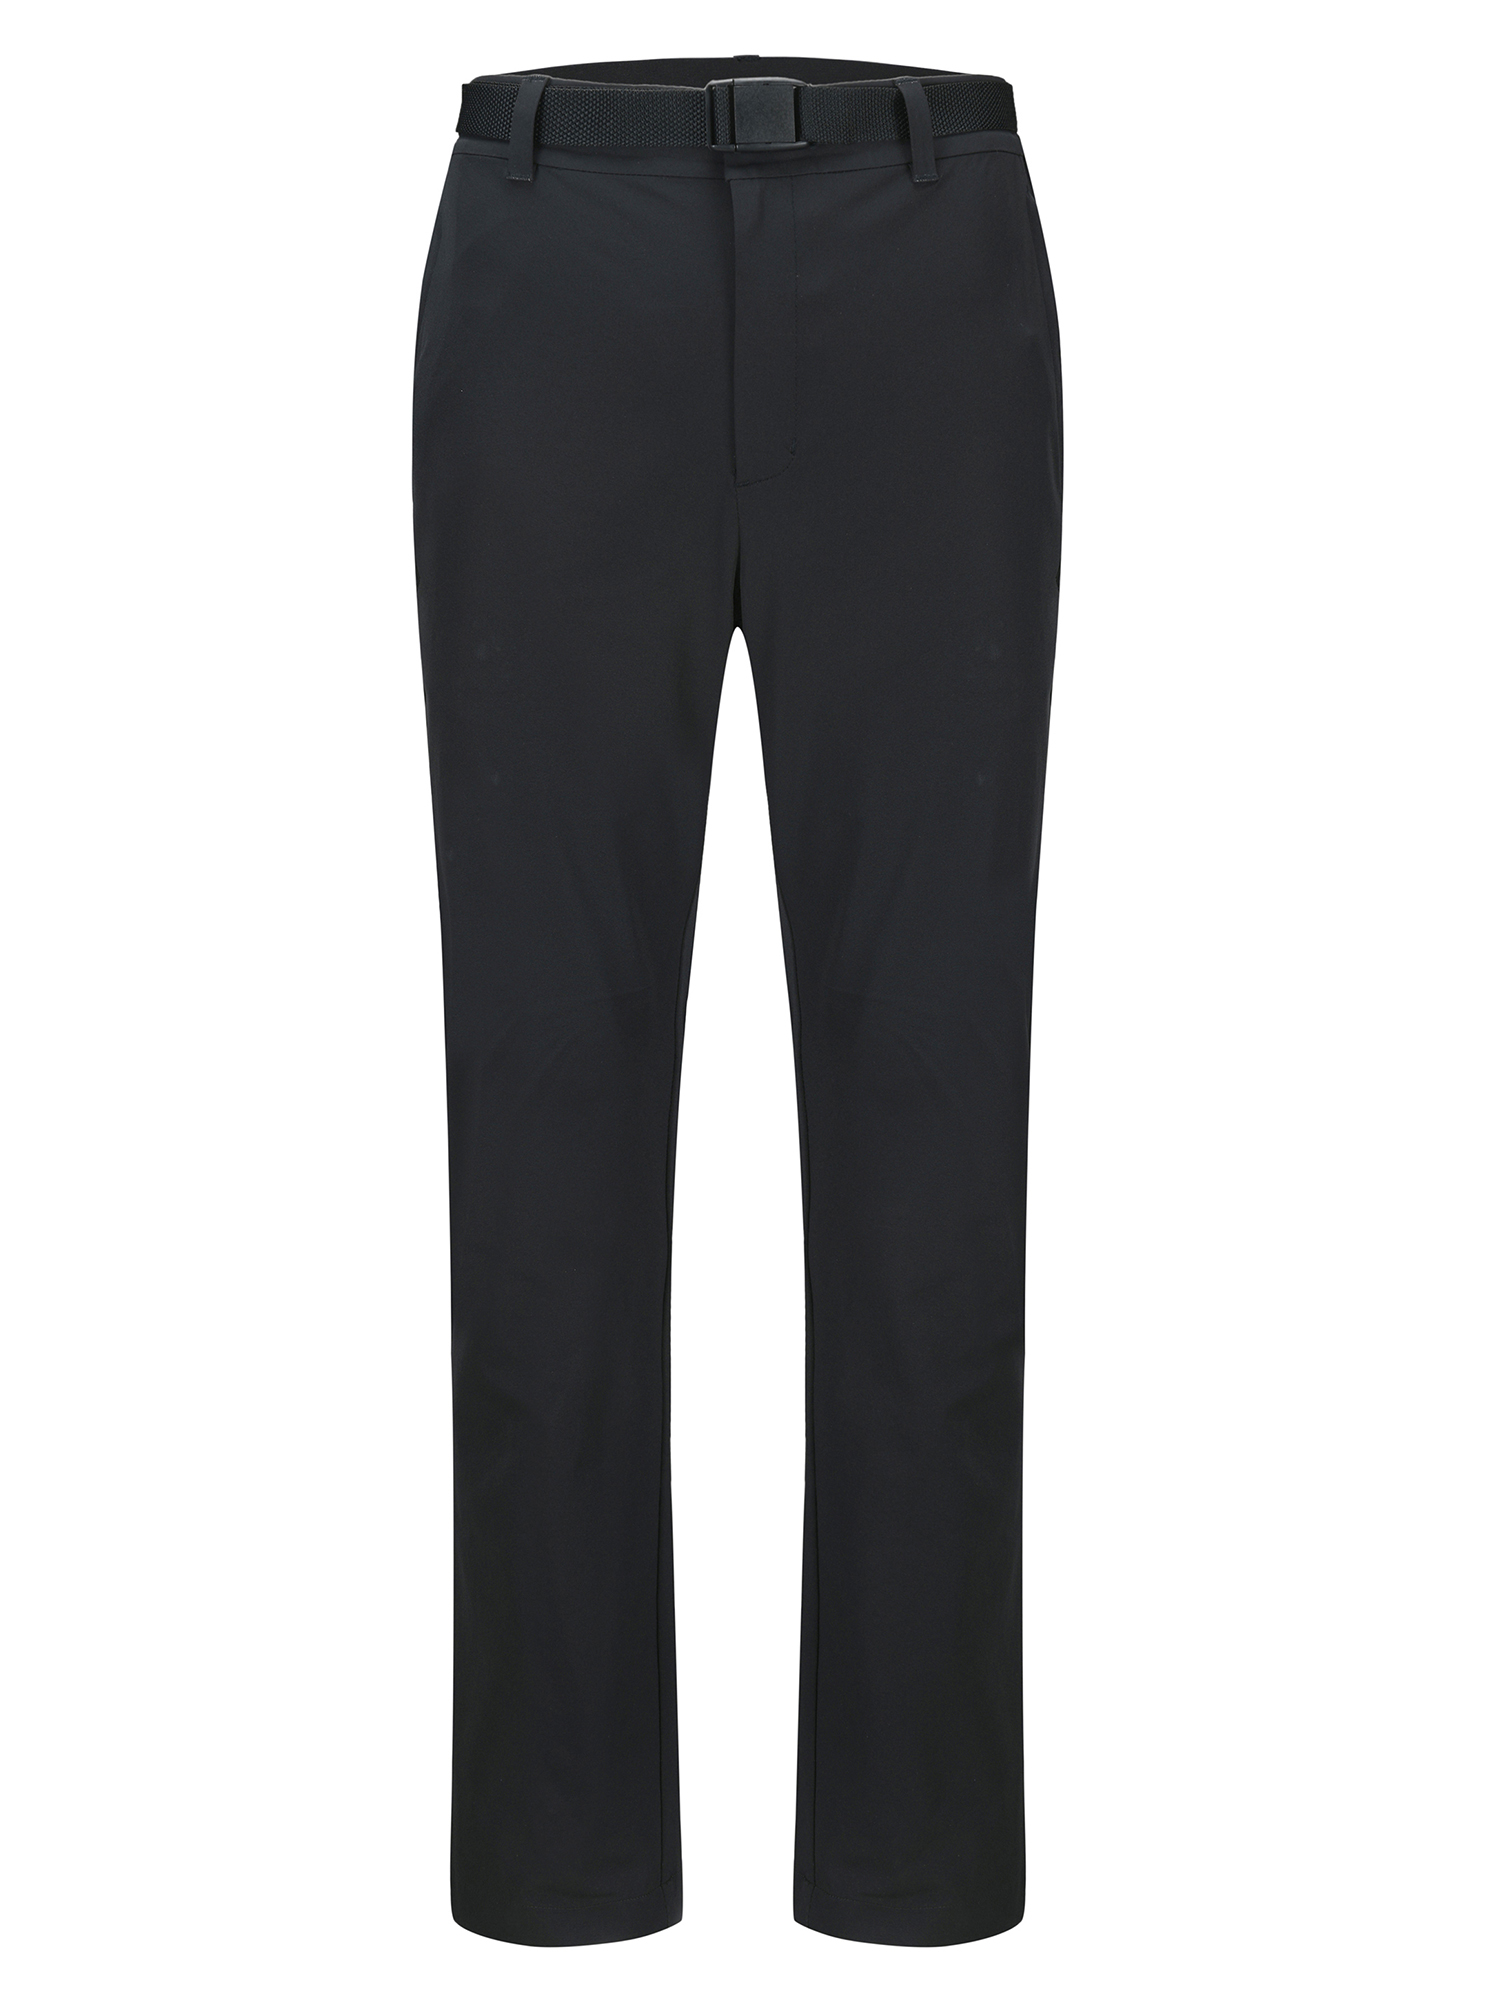 Спортивные брюки женские Toread Women's Hiking Pants черные XL